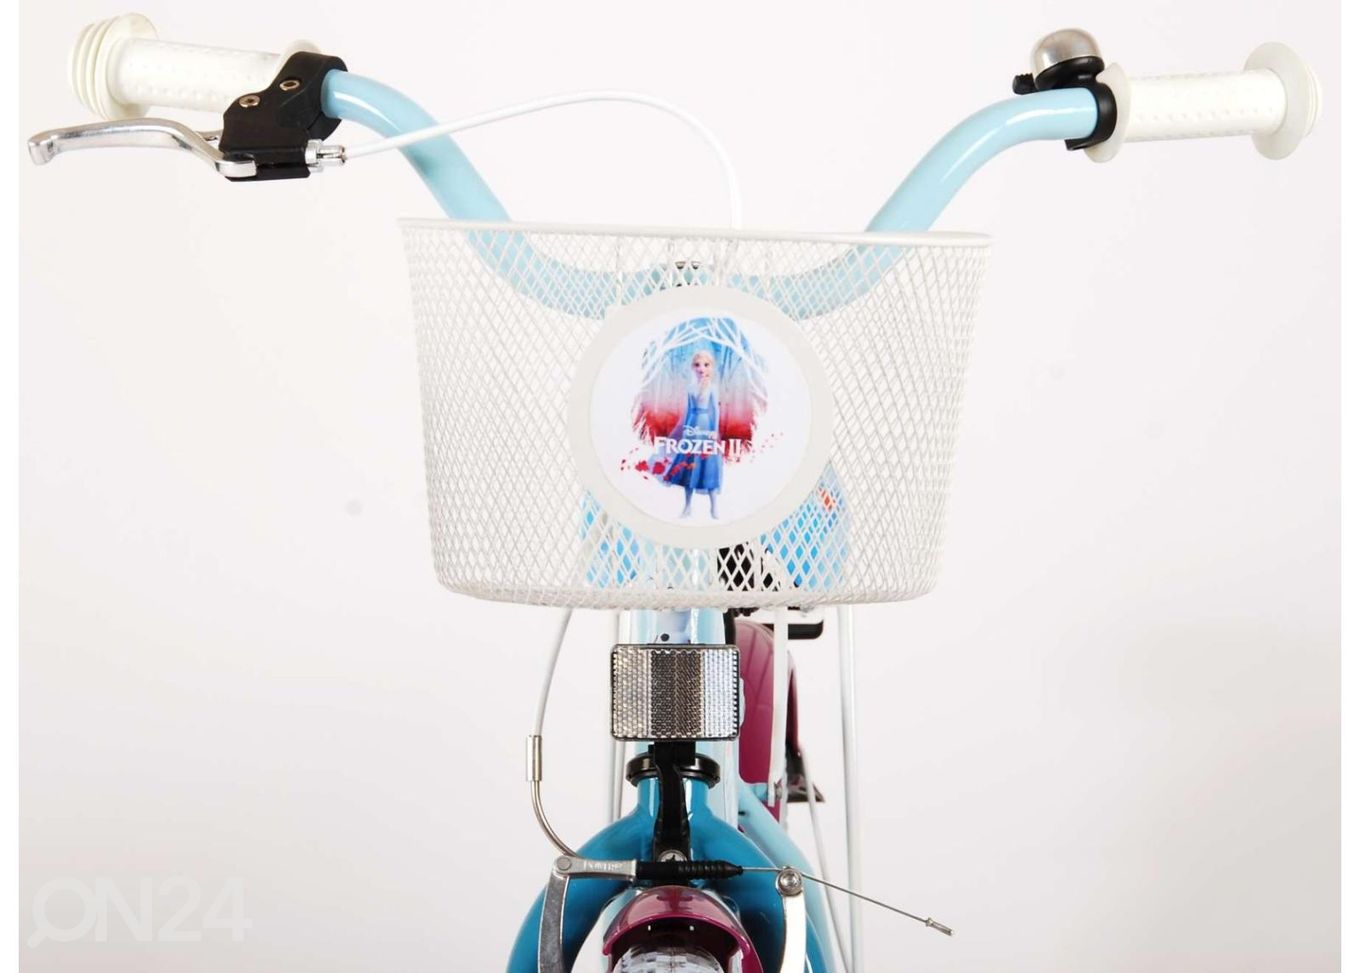 Детский велосипед Disney Frozen 18 дюймов Volare увеличить